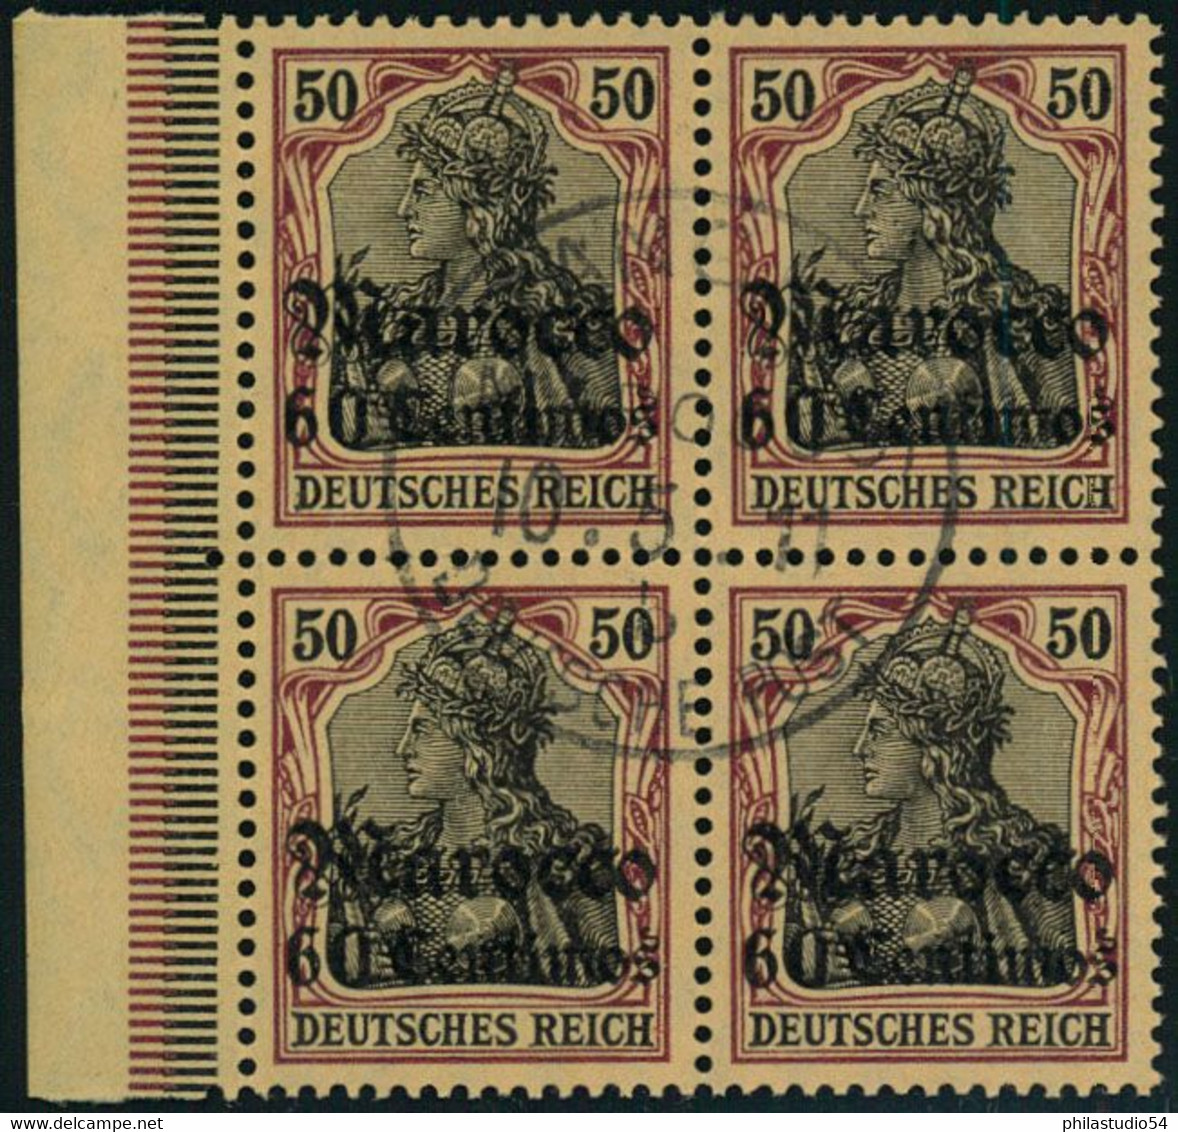 1911, 60 Centimes Auf 50 Pfg. Germania Im Viererblock Mit Seltenem Stempel TANGER MAROCCO. - Morocco (offices)